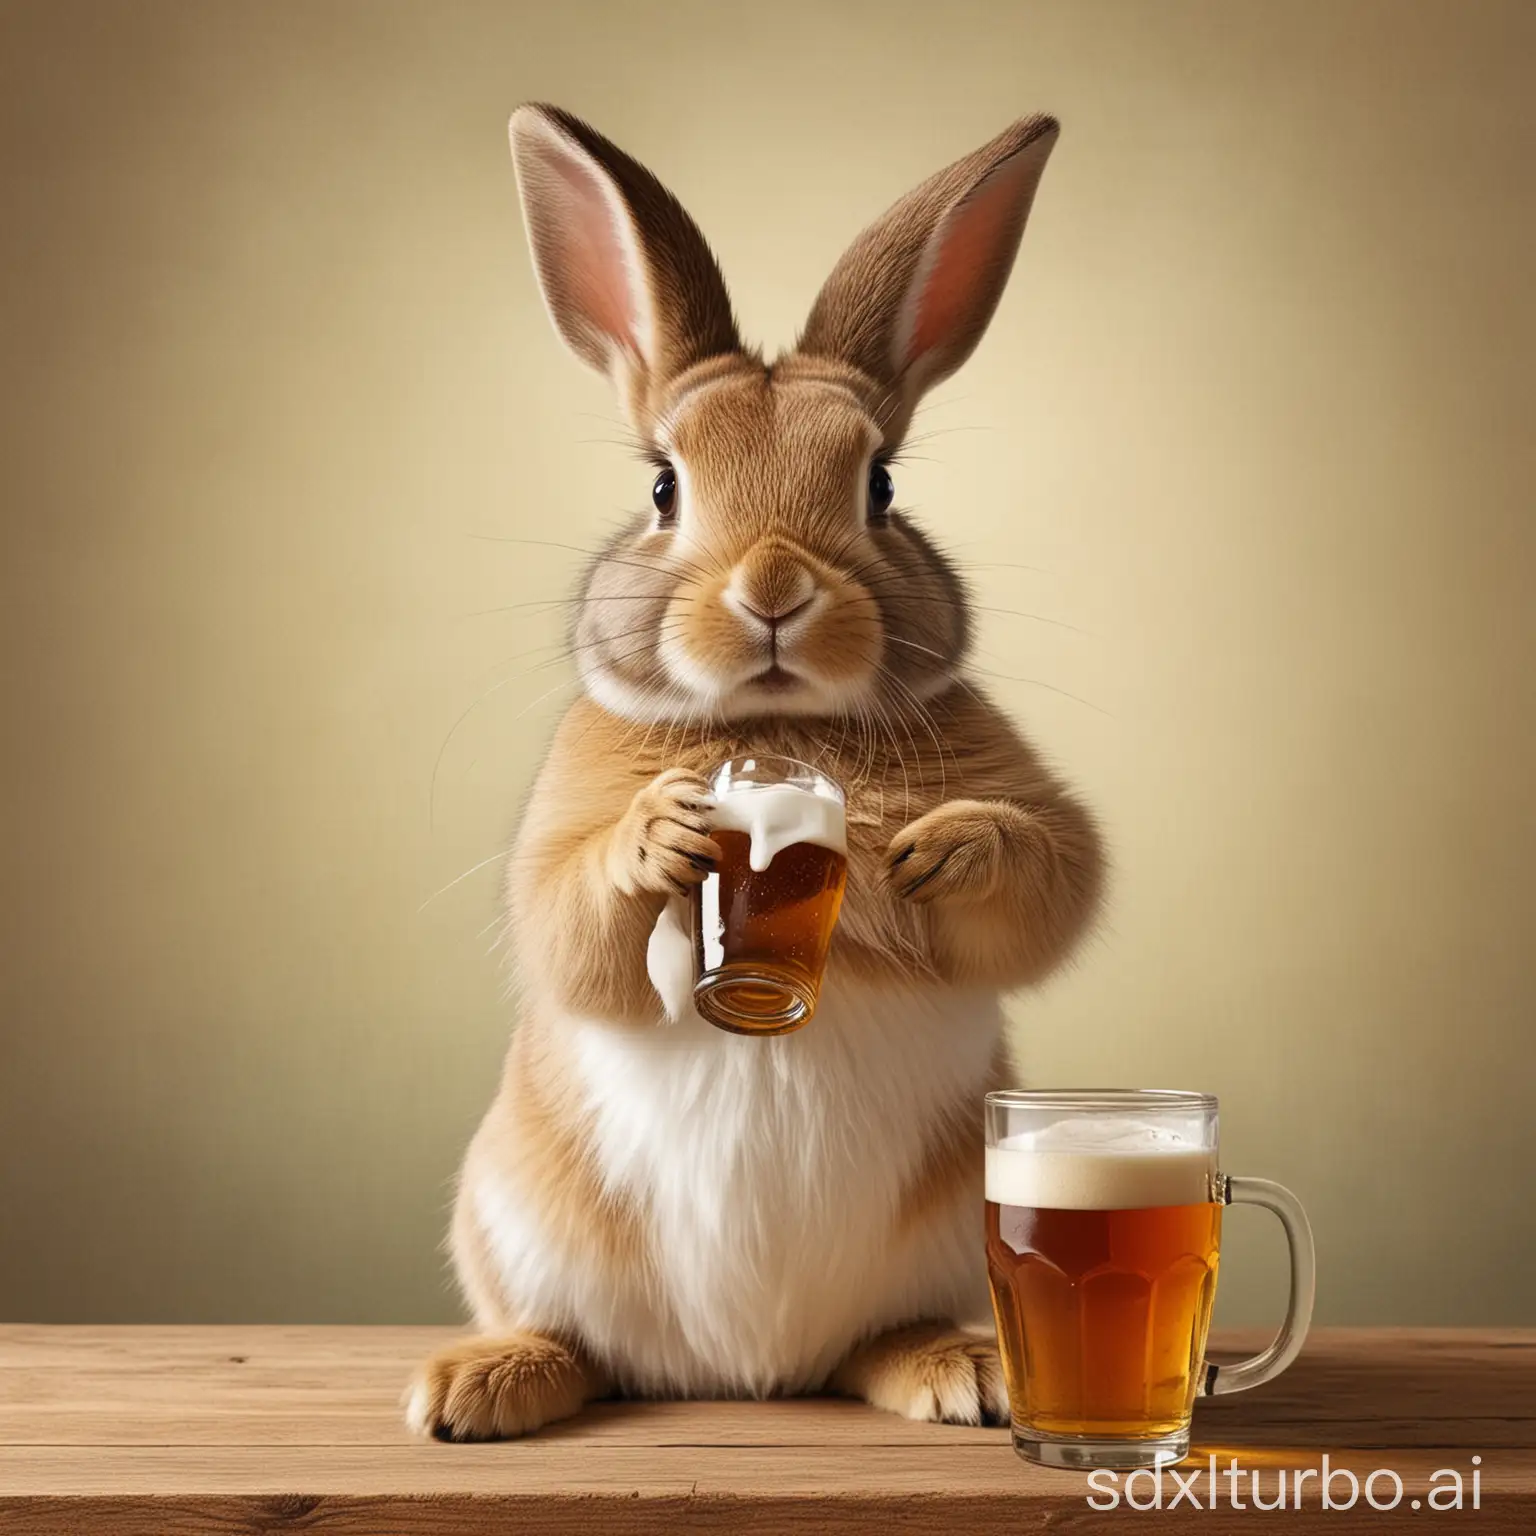 biertrinkendes Kaninschen